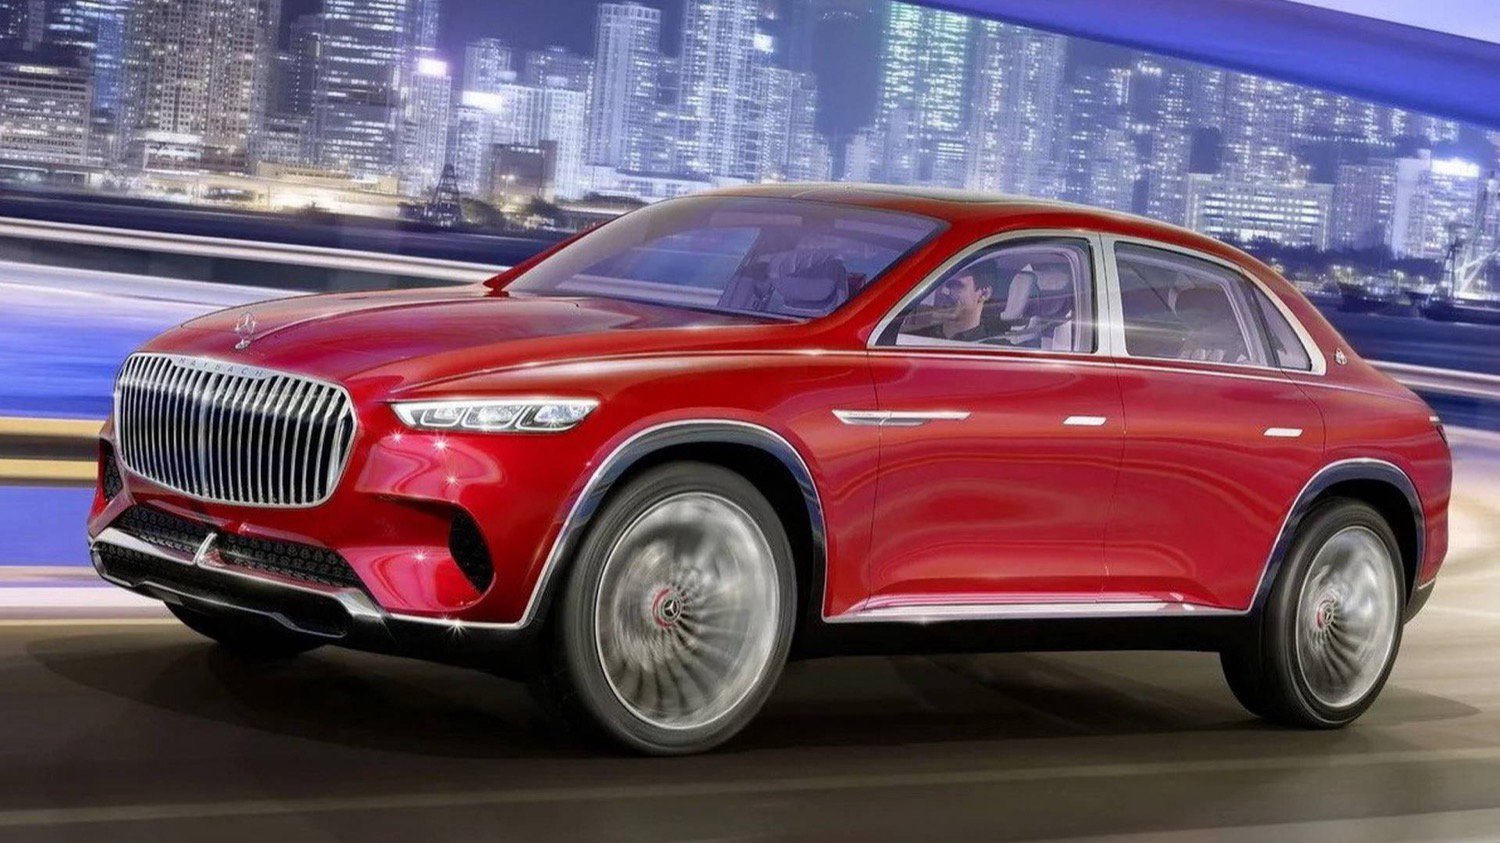 Mercedes ha presentado el concepto de lujo Maybach eléctrico